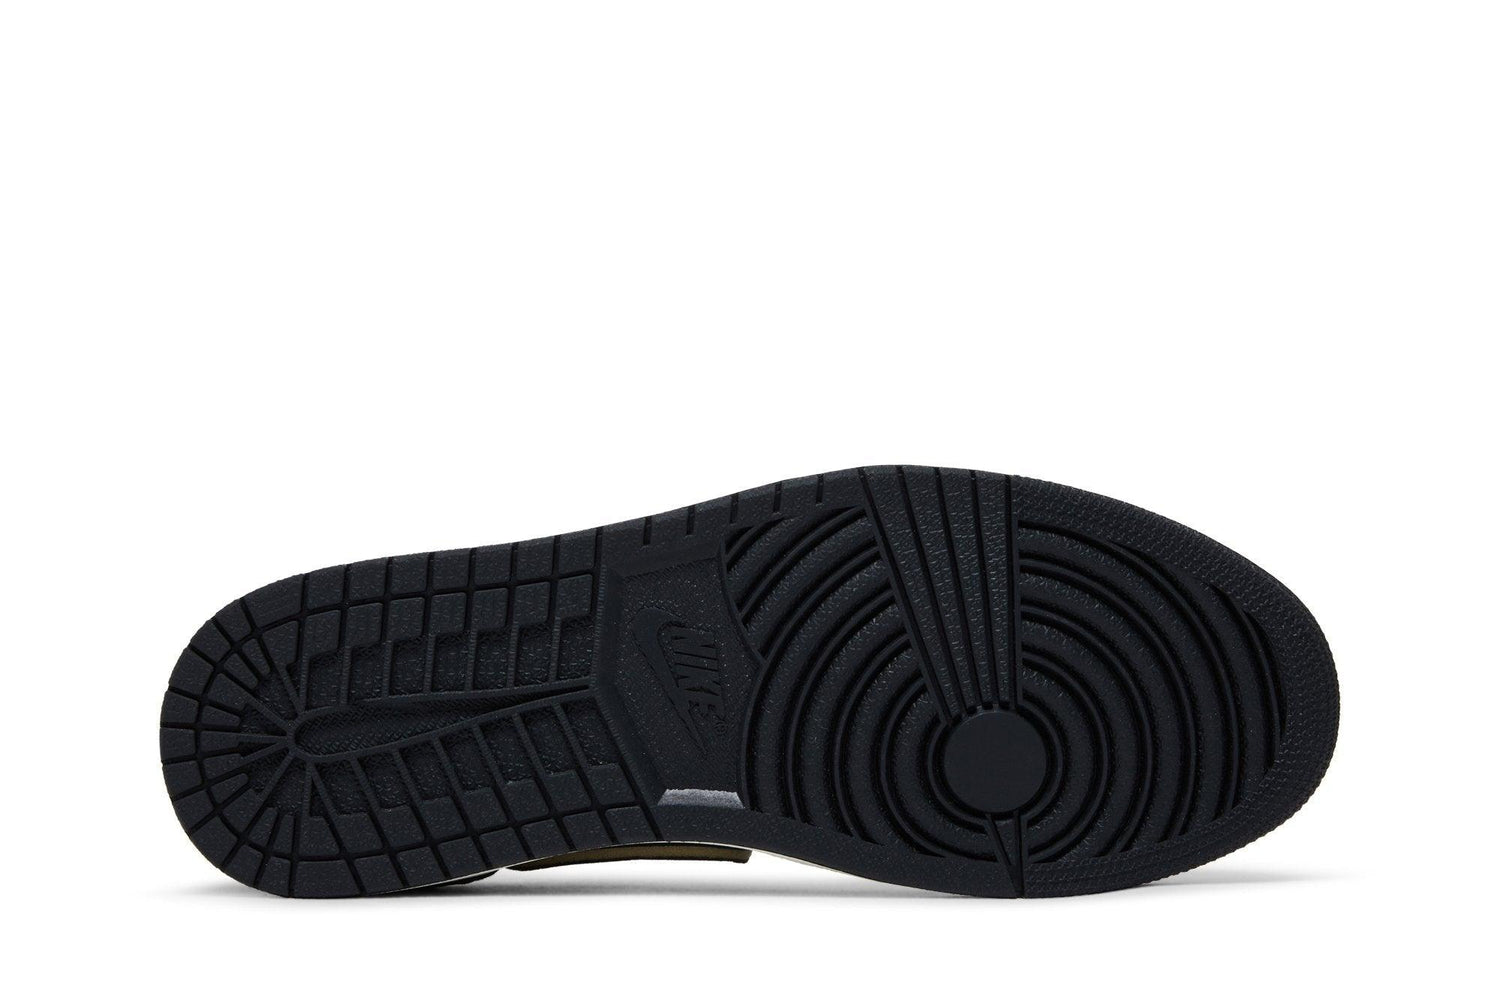 Tênis Air Jordan 1 Low OG EX Black and Smoke Grey Cinza - LK Sneakers